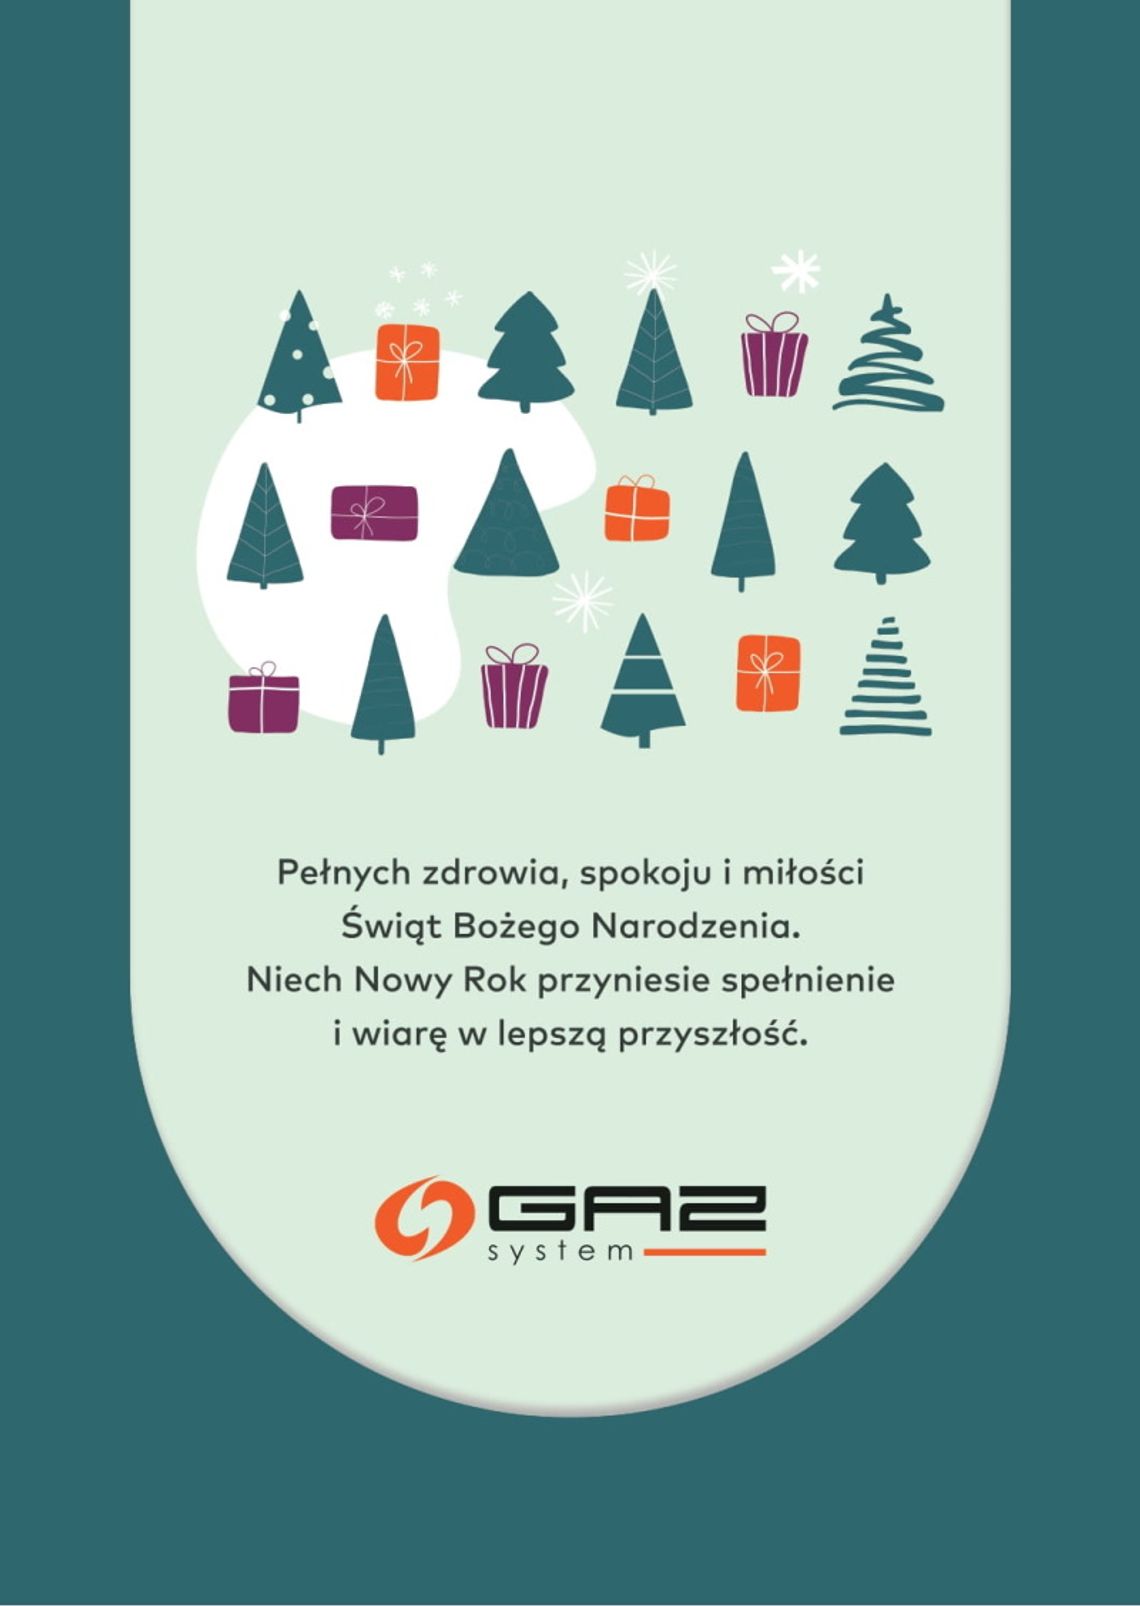 Życzenia bożonarodzeniowe i noworoczne firmy Gaz - System dla Czytelników KK24.pl